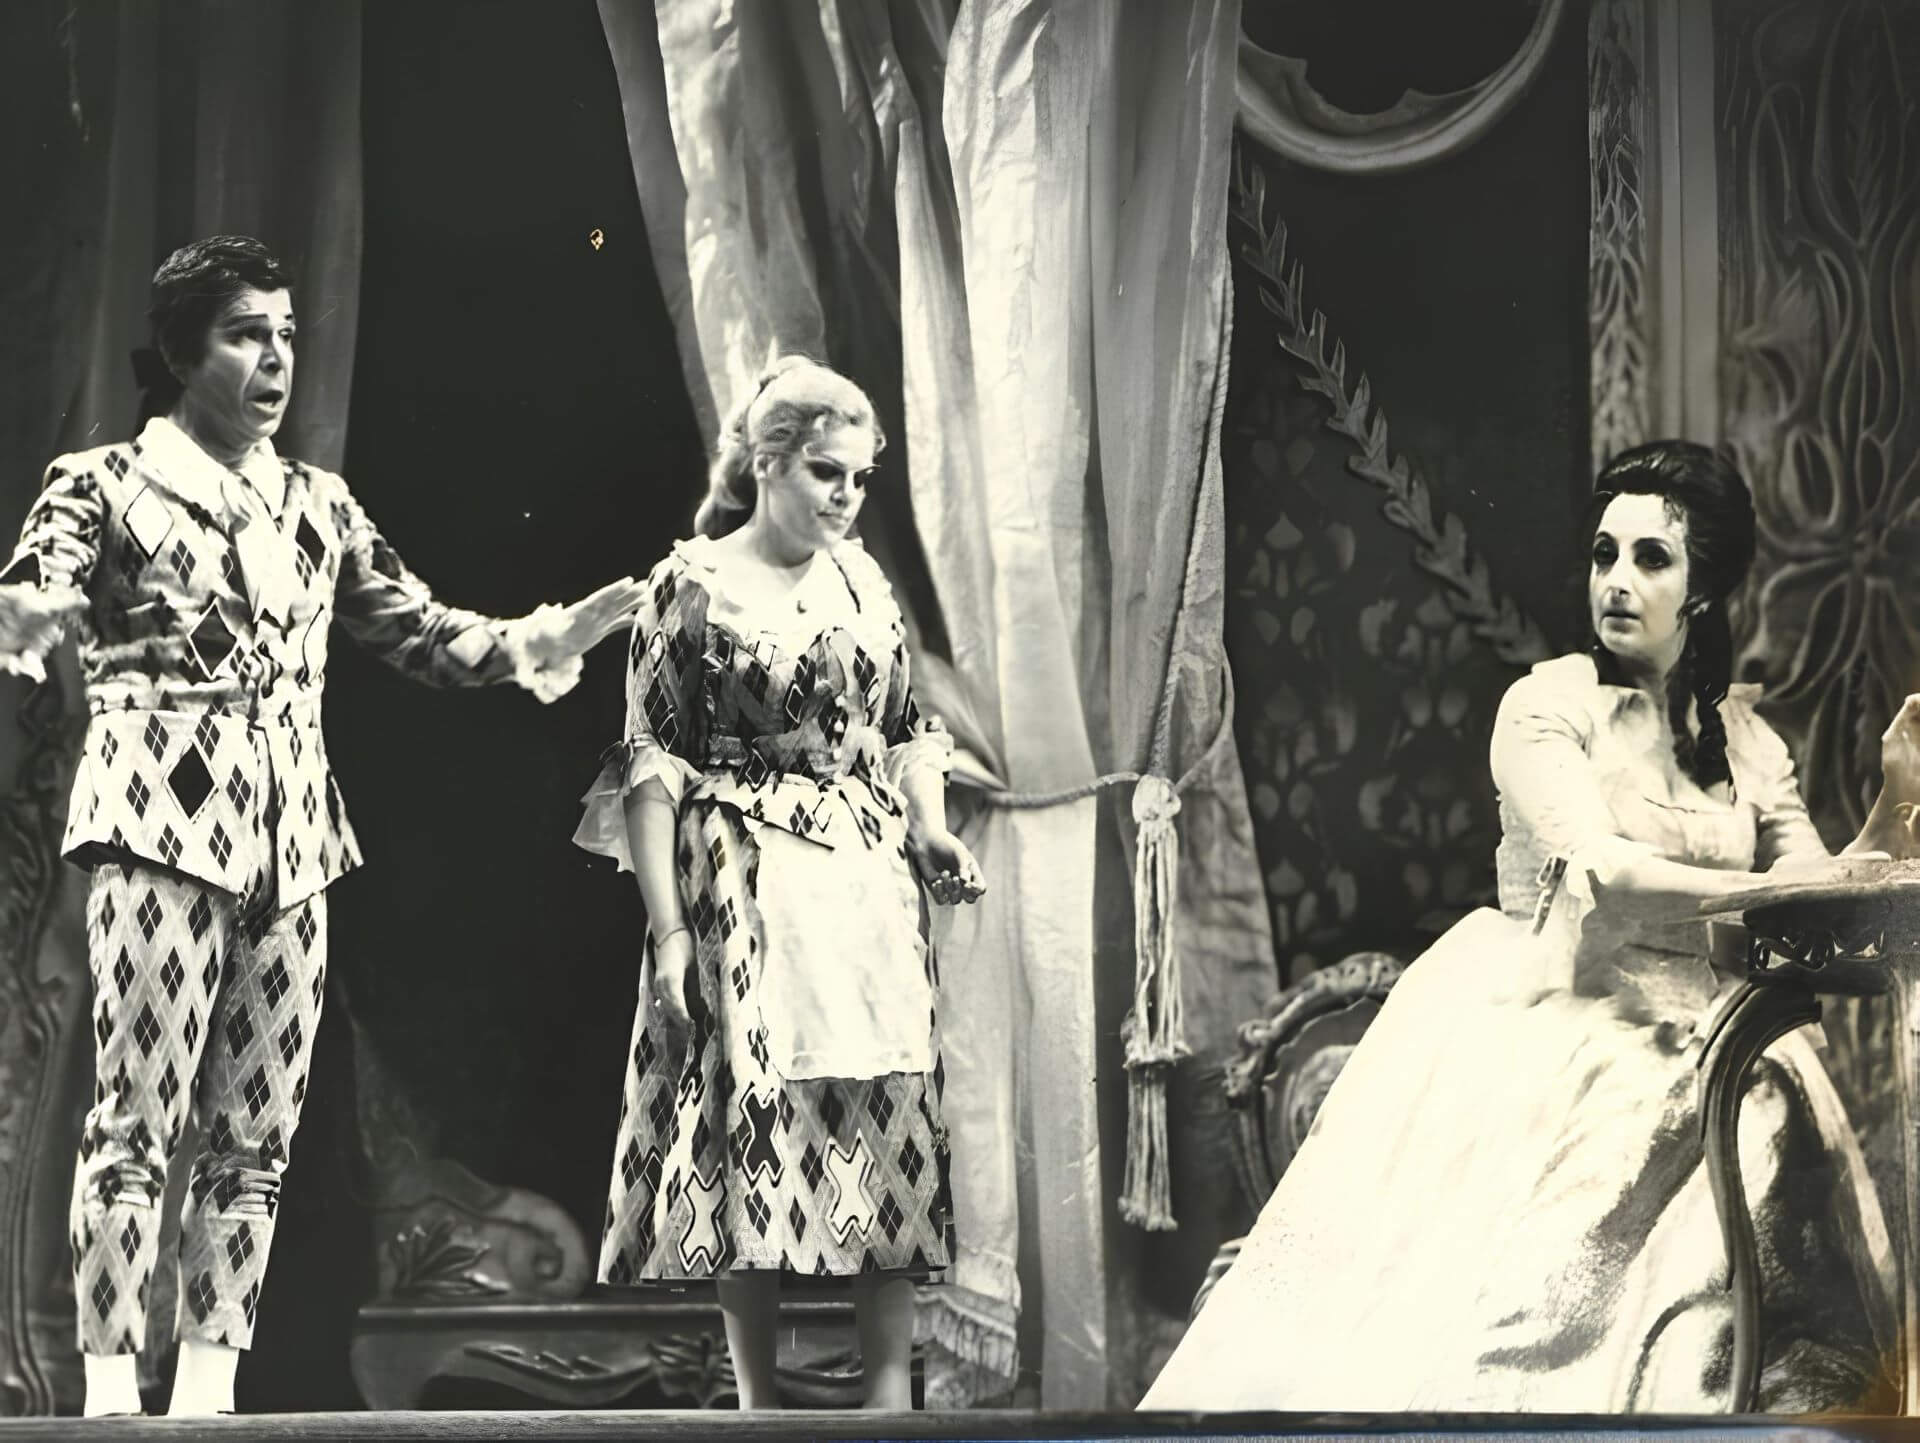 Στιγμιότυπο από την όπερα Οι γάμοι του Φίγκαρο του Βόλφγκανγκ Αμαντέους Μότσαρτ σε μουσική διεύθυνση Δημήτρη Χωραφά, Άλκη Μπαλτά και σκηνοθεσία Ρενέ Τερρασόν, Θέατρο Ολύμπια (1979/80).